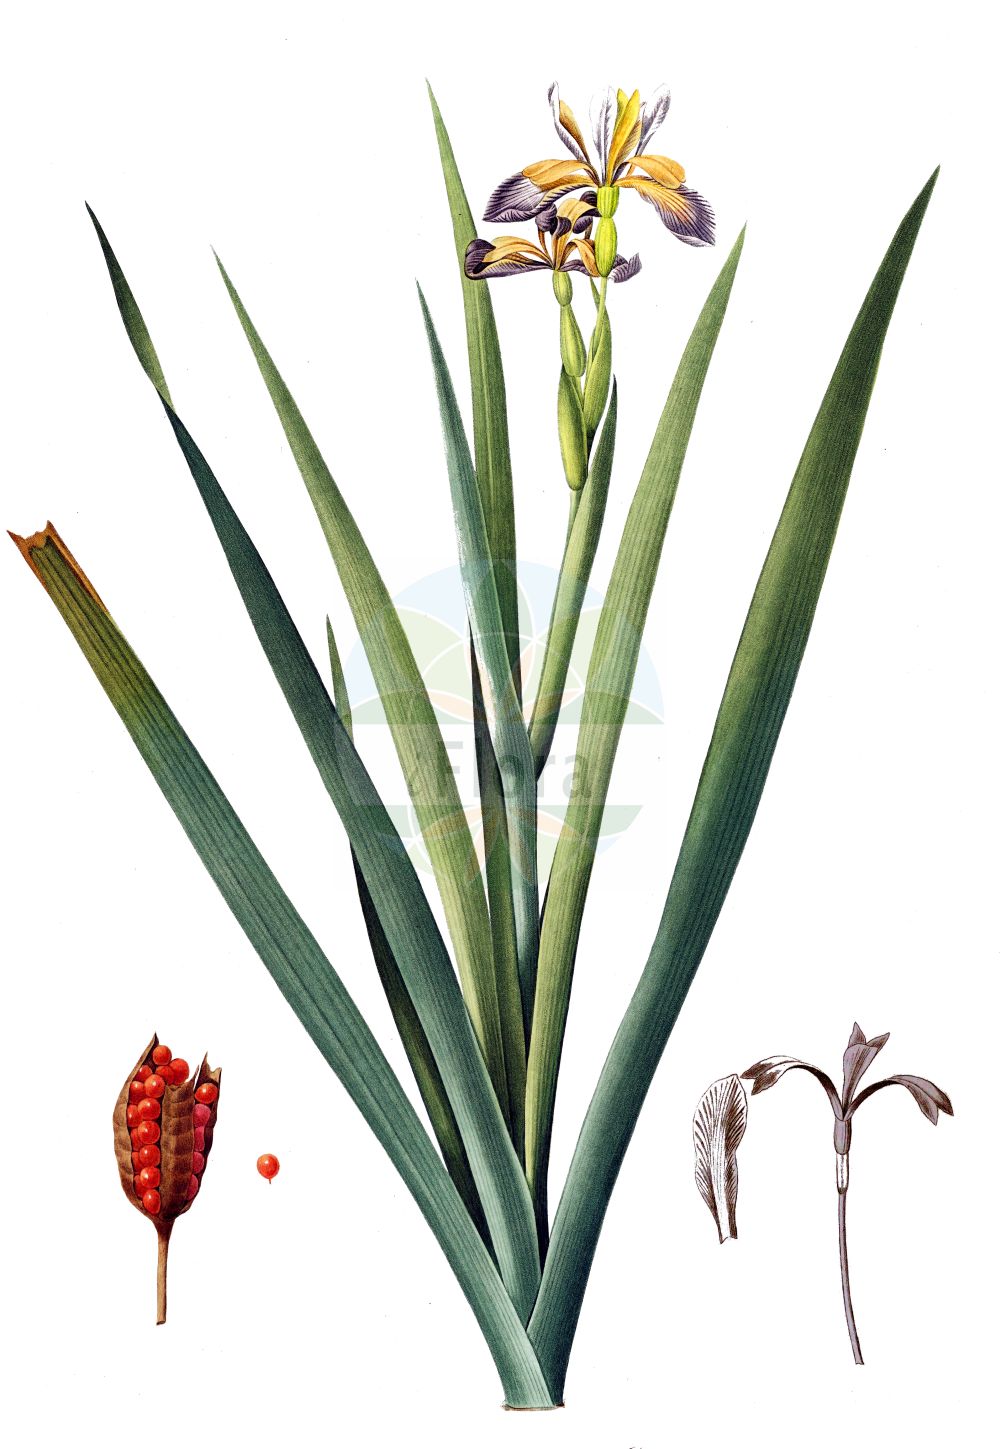 Historische Abbildung von Iris foetidissima (Stinking Iris). Das Bild zeigt Blatt, Bluete, Frucht und Same. ---- Historical Drawing of Iris foetidissima (Stinking Iris). The image is showing leaf, flower, fruit and seed.(Iris foetidissima,Stinking Iris,Chamaeiris foetida,Iris foetida,Iris foetidissima,Spathula foetidissima,Xiphion foetidissimum,Xyridion foetidissimum,Iris,Schwertlilie,Iris,Iridaceae,Schwertliliengewächse,Iris family,Blatt,Bluete,Frucht,Same,leaf,flower,fruit,seed,Redouté (1802-1816))